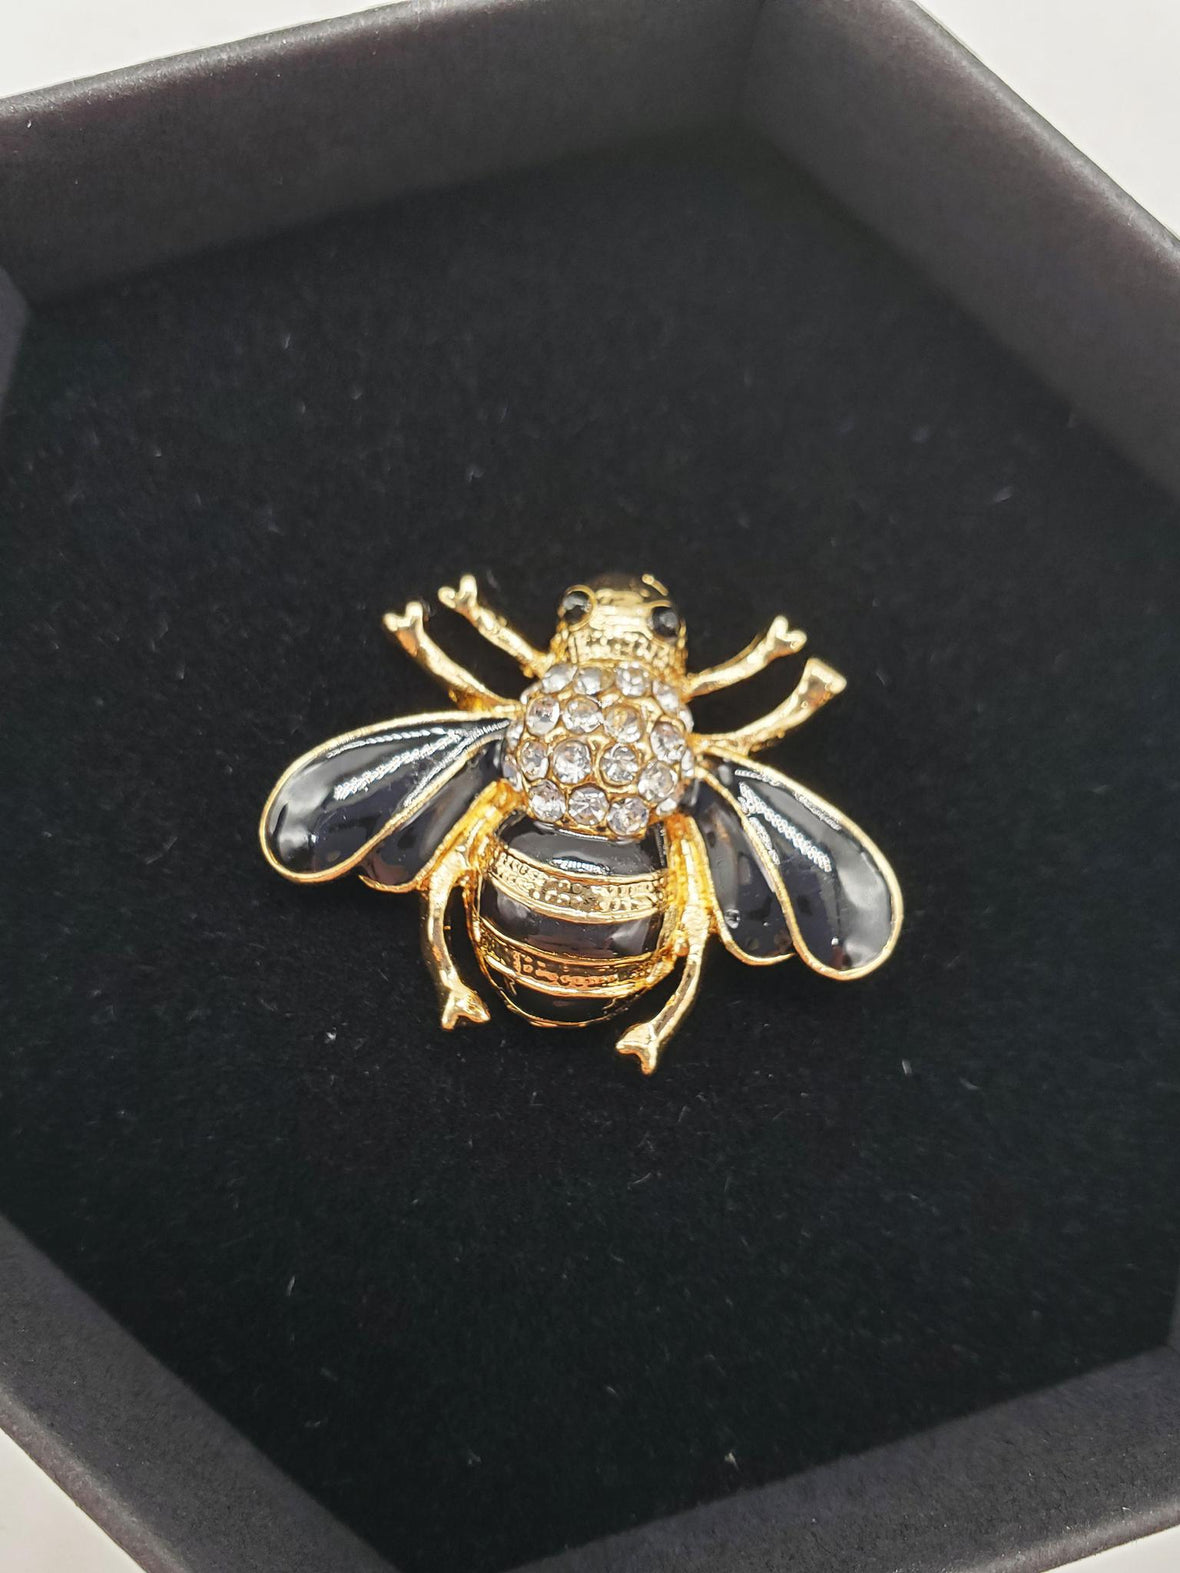 Bee Brooch - The Fabulous Honey Queen